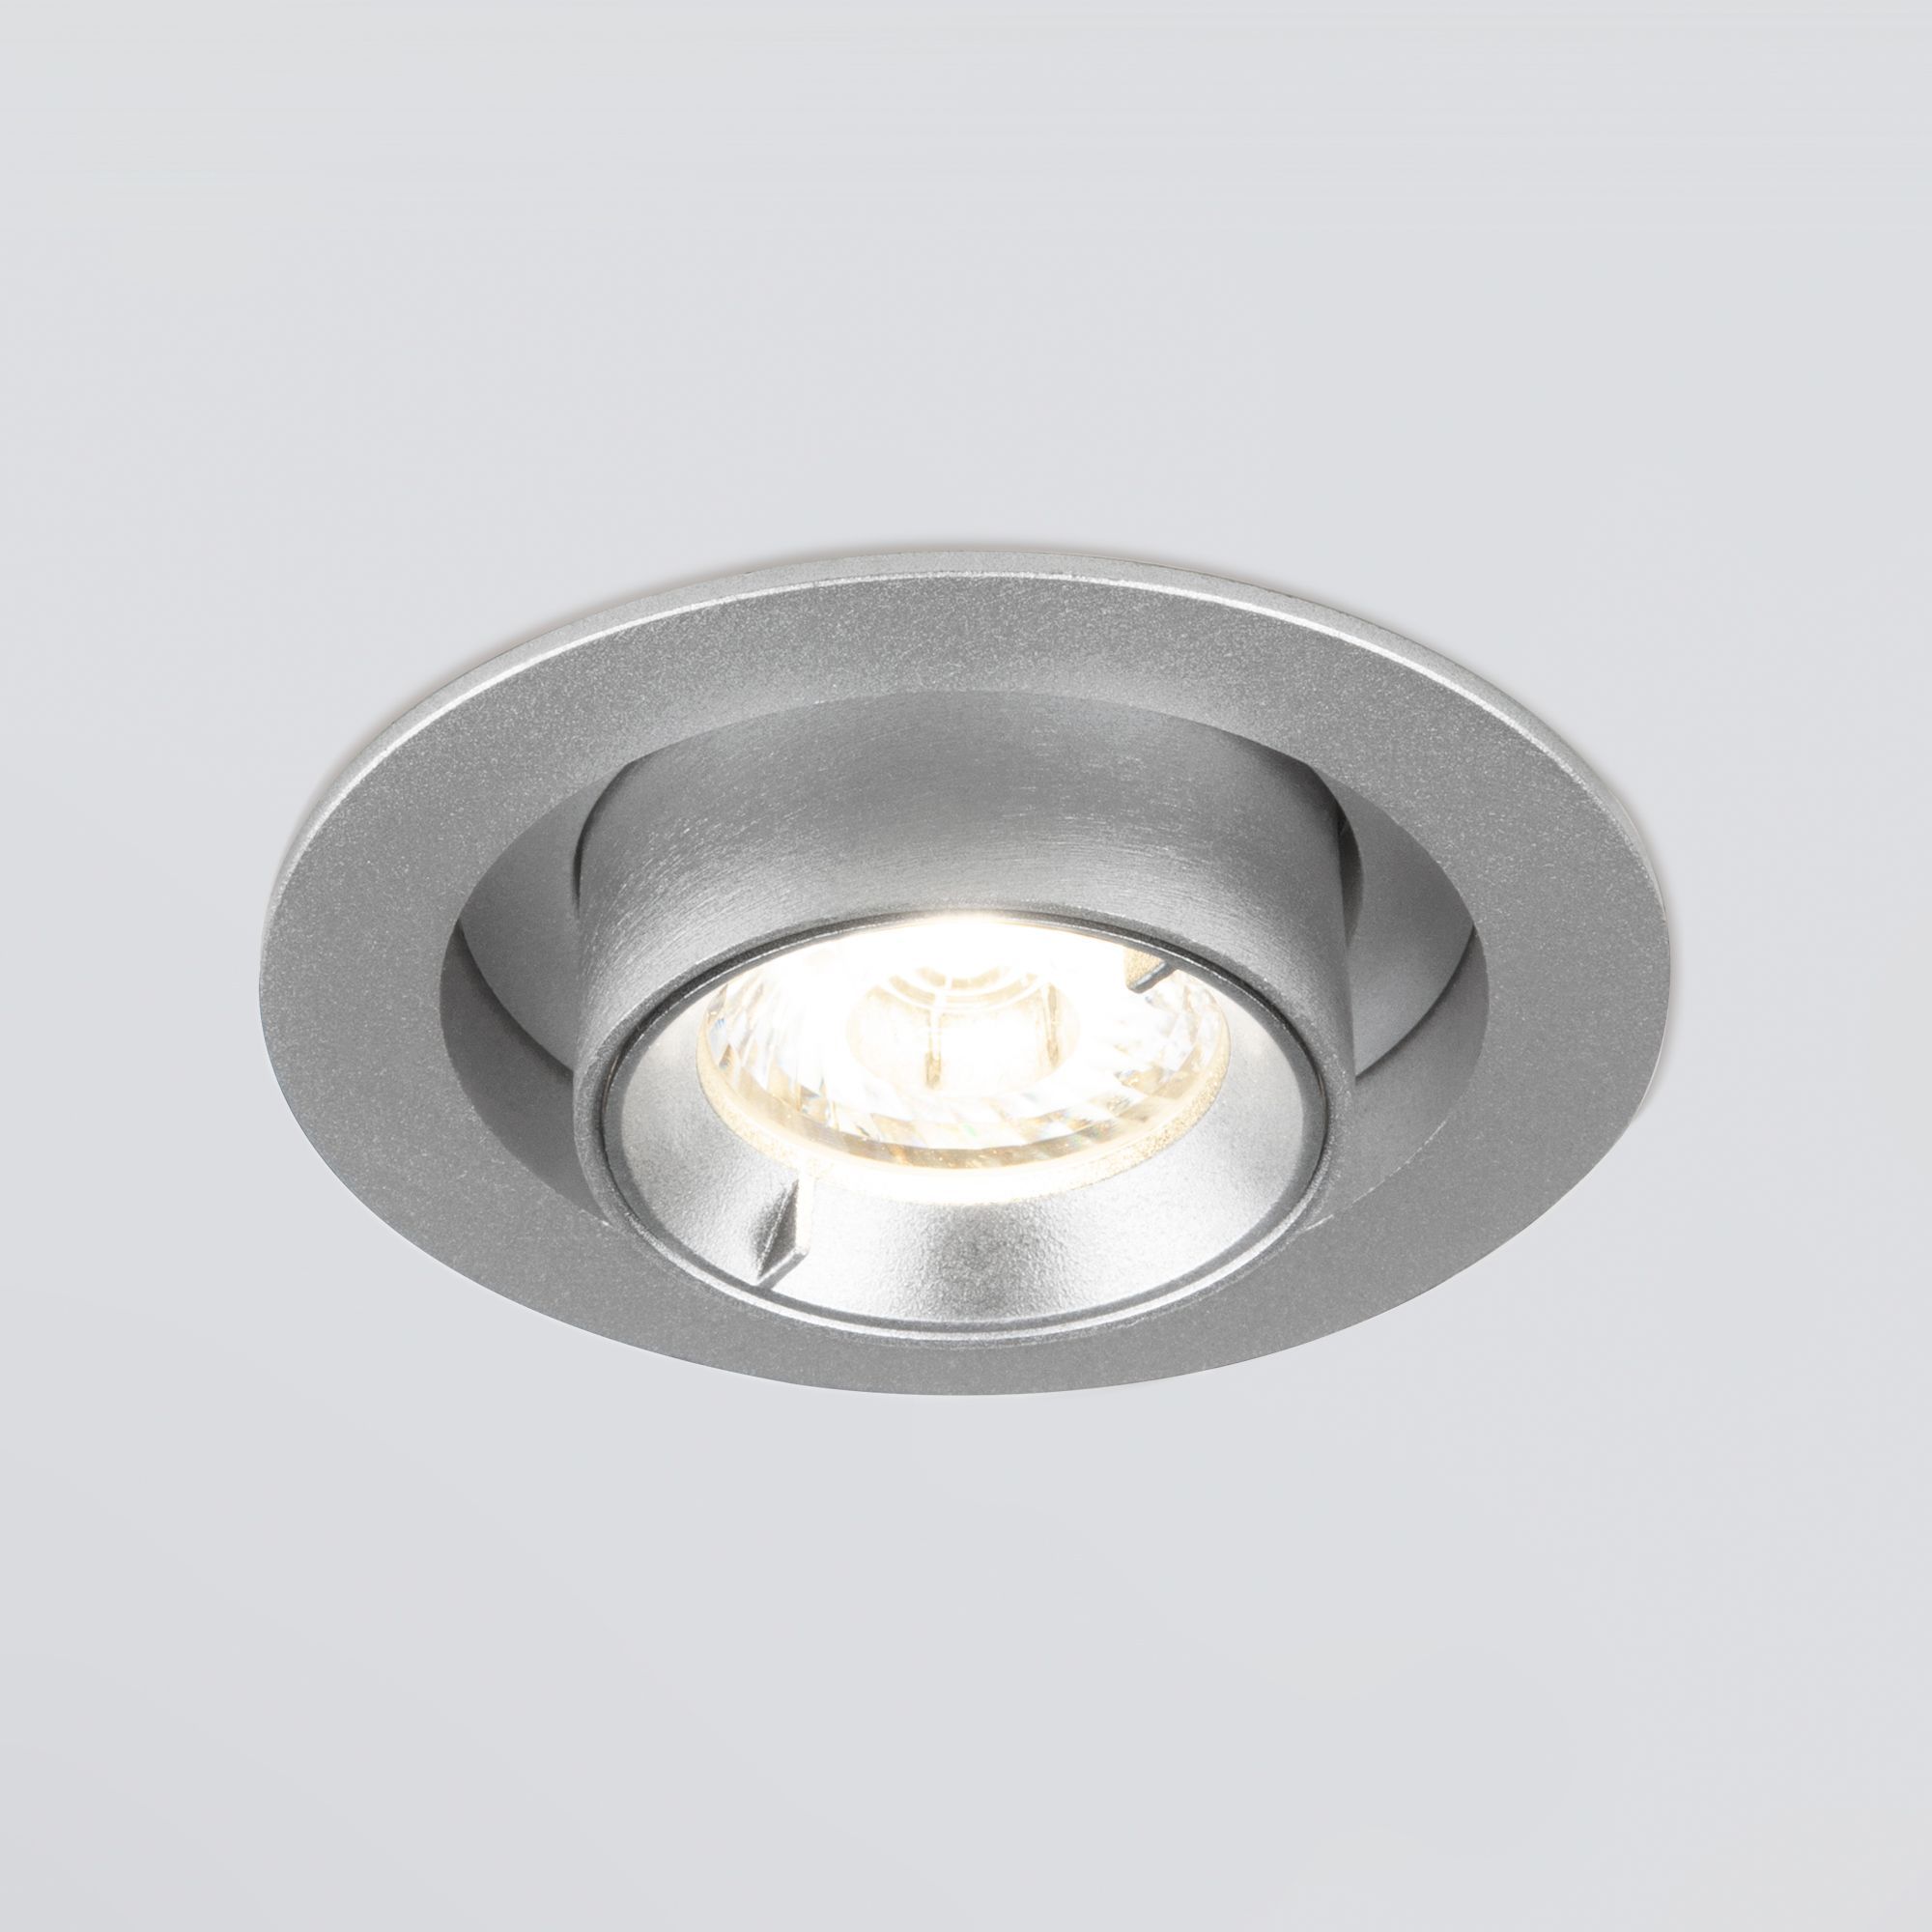 Встраиваемый точечный светодиодный светильник Elektrostandard Pispa 9917 LED 10W 4200K серебро. Фото 3